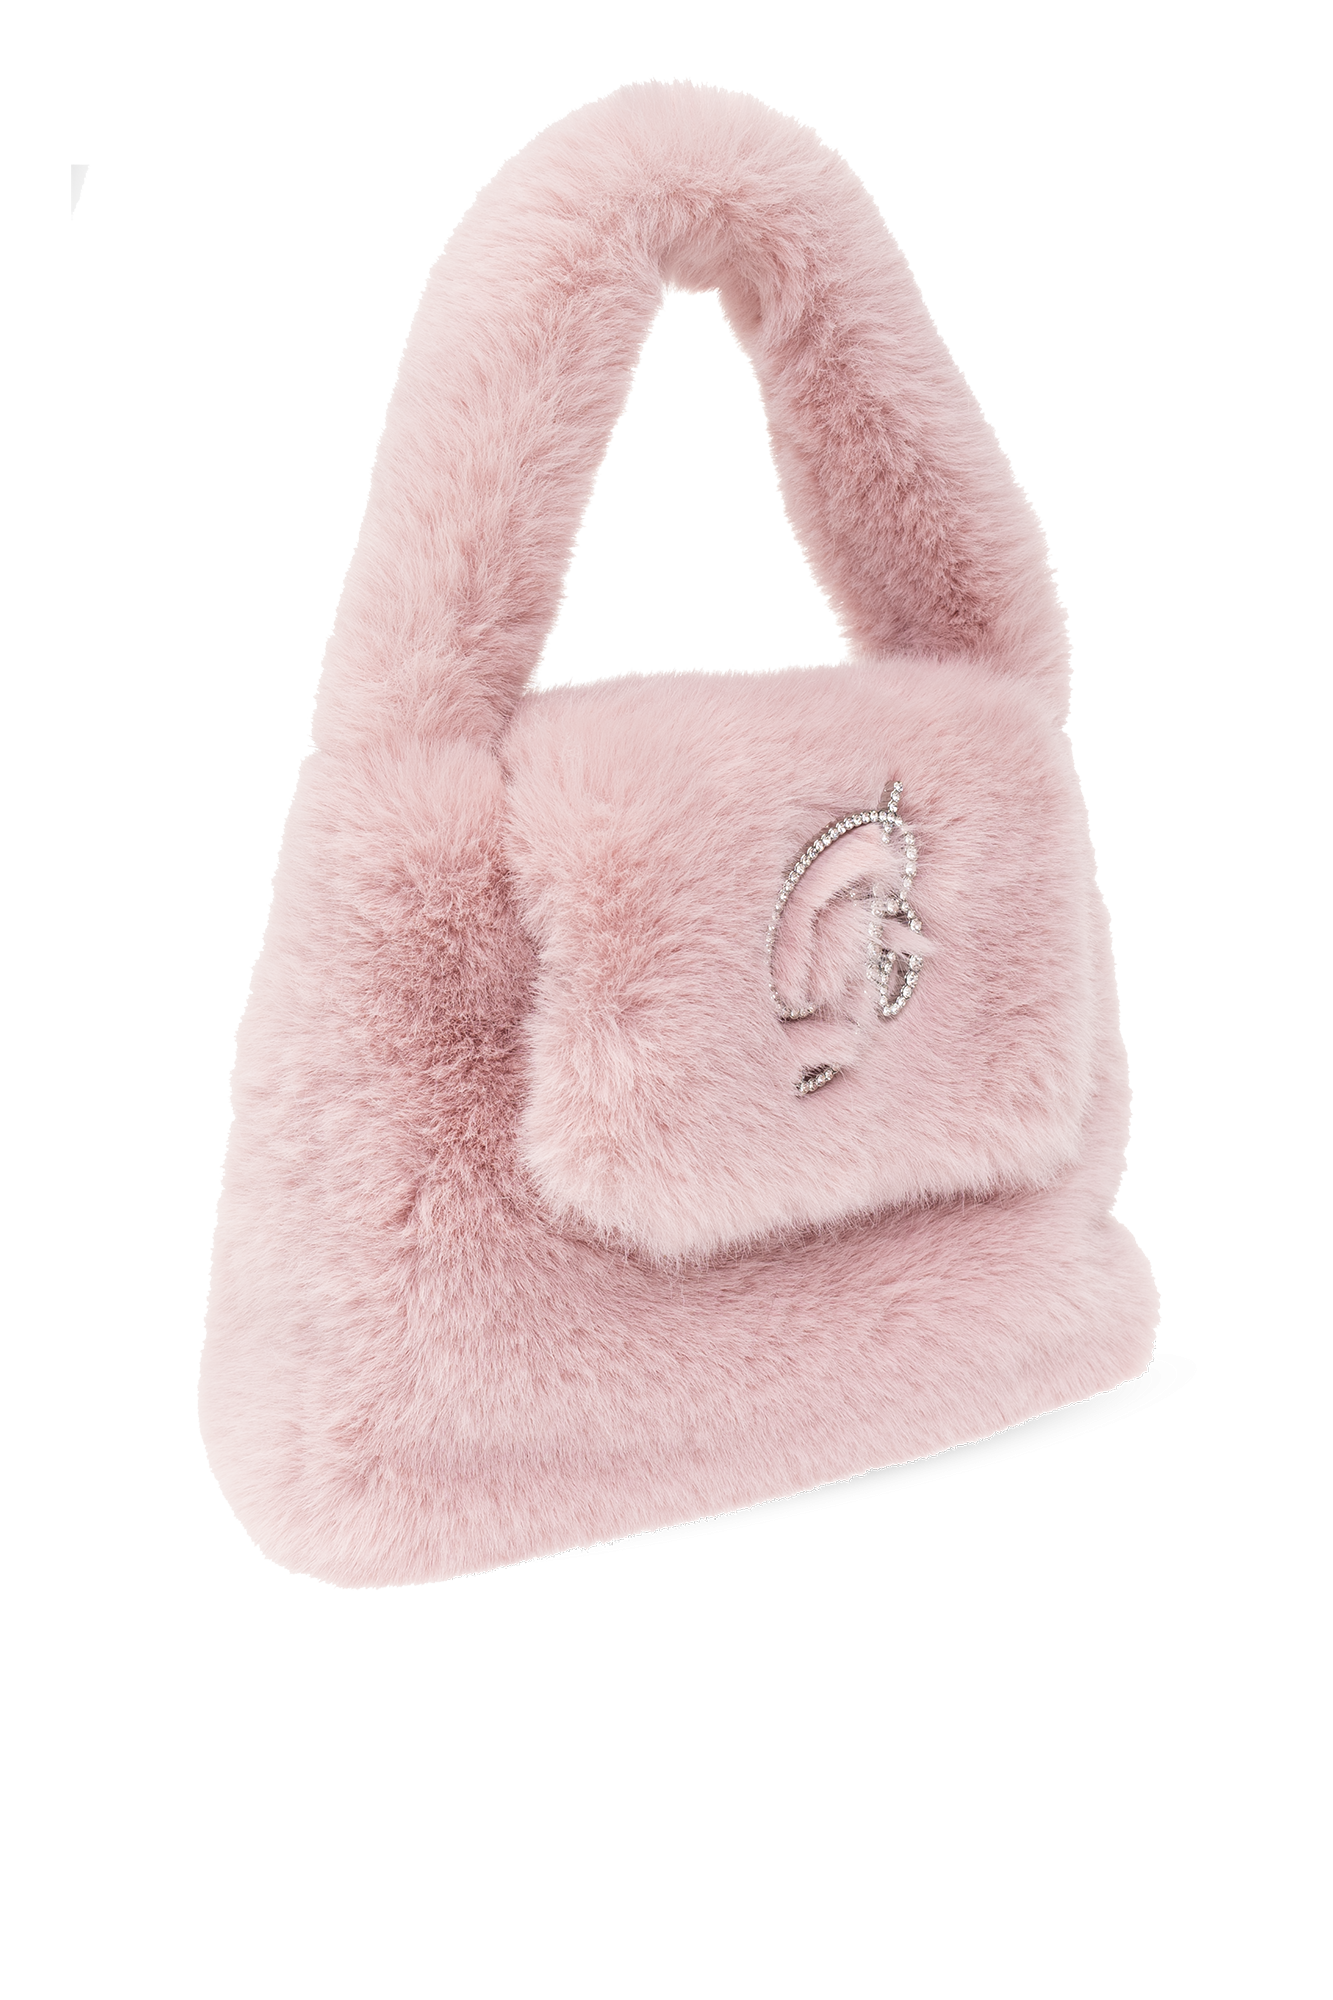 Mink Flats Louis Vuitton Pink Size 37.5 Eu In Mink